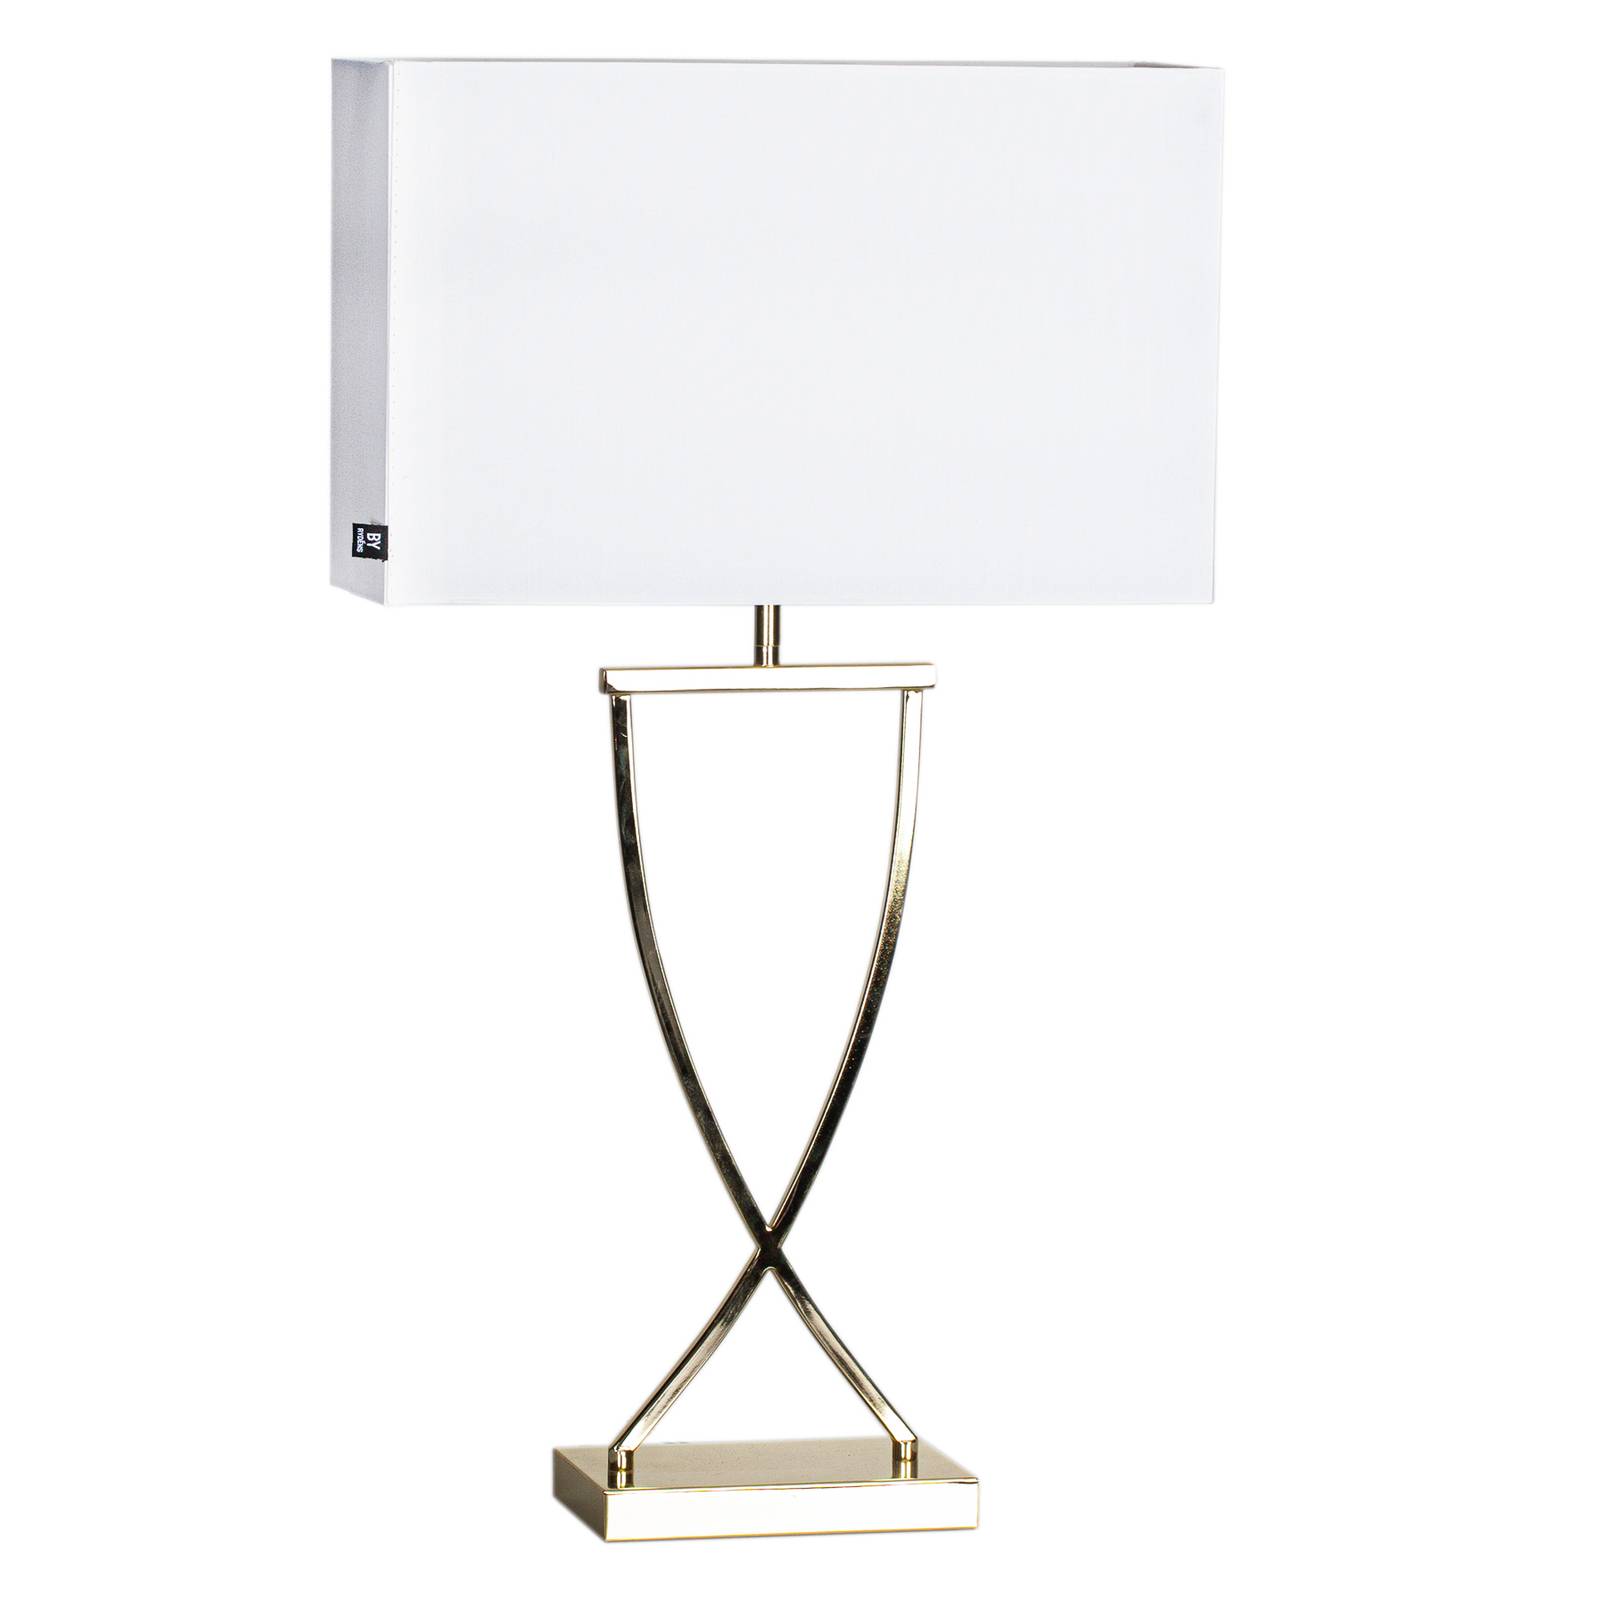 By Rydéns Omega asztali lámpa sárgaréz/fehér 69cm